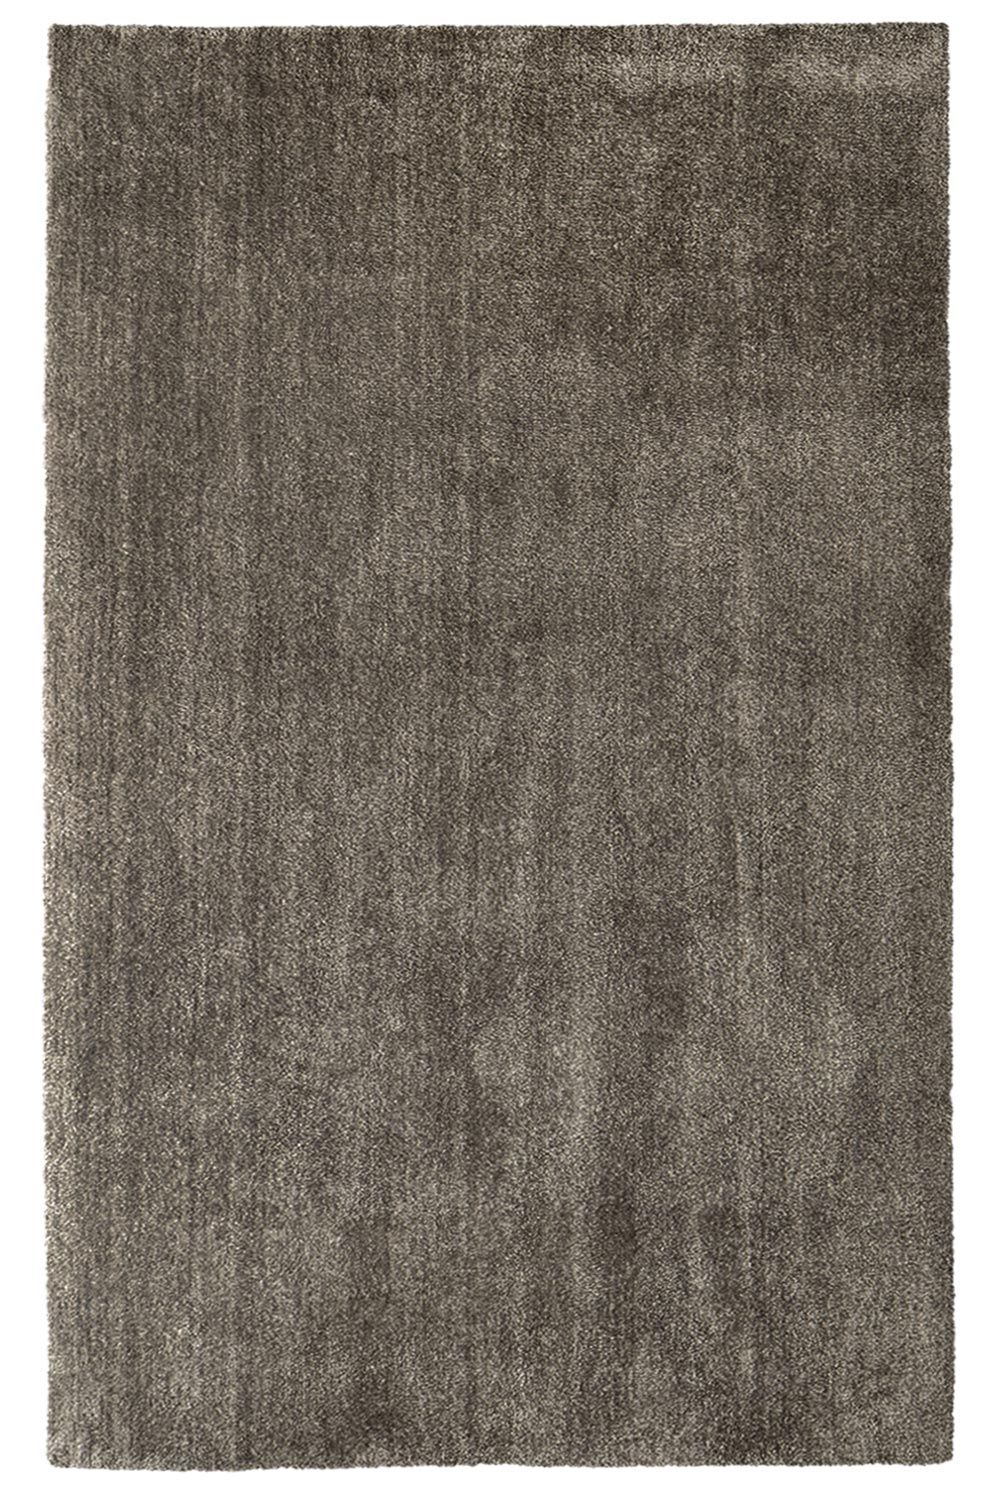 Kusový koberec Labrador 71351 080 Taupe 120x170 cm